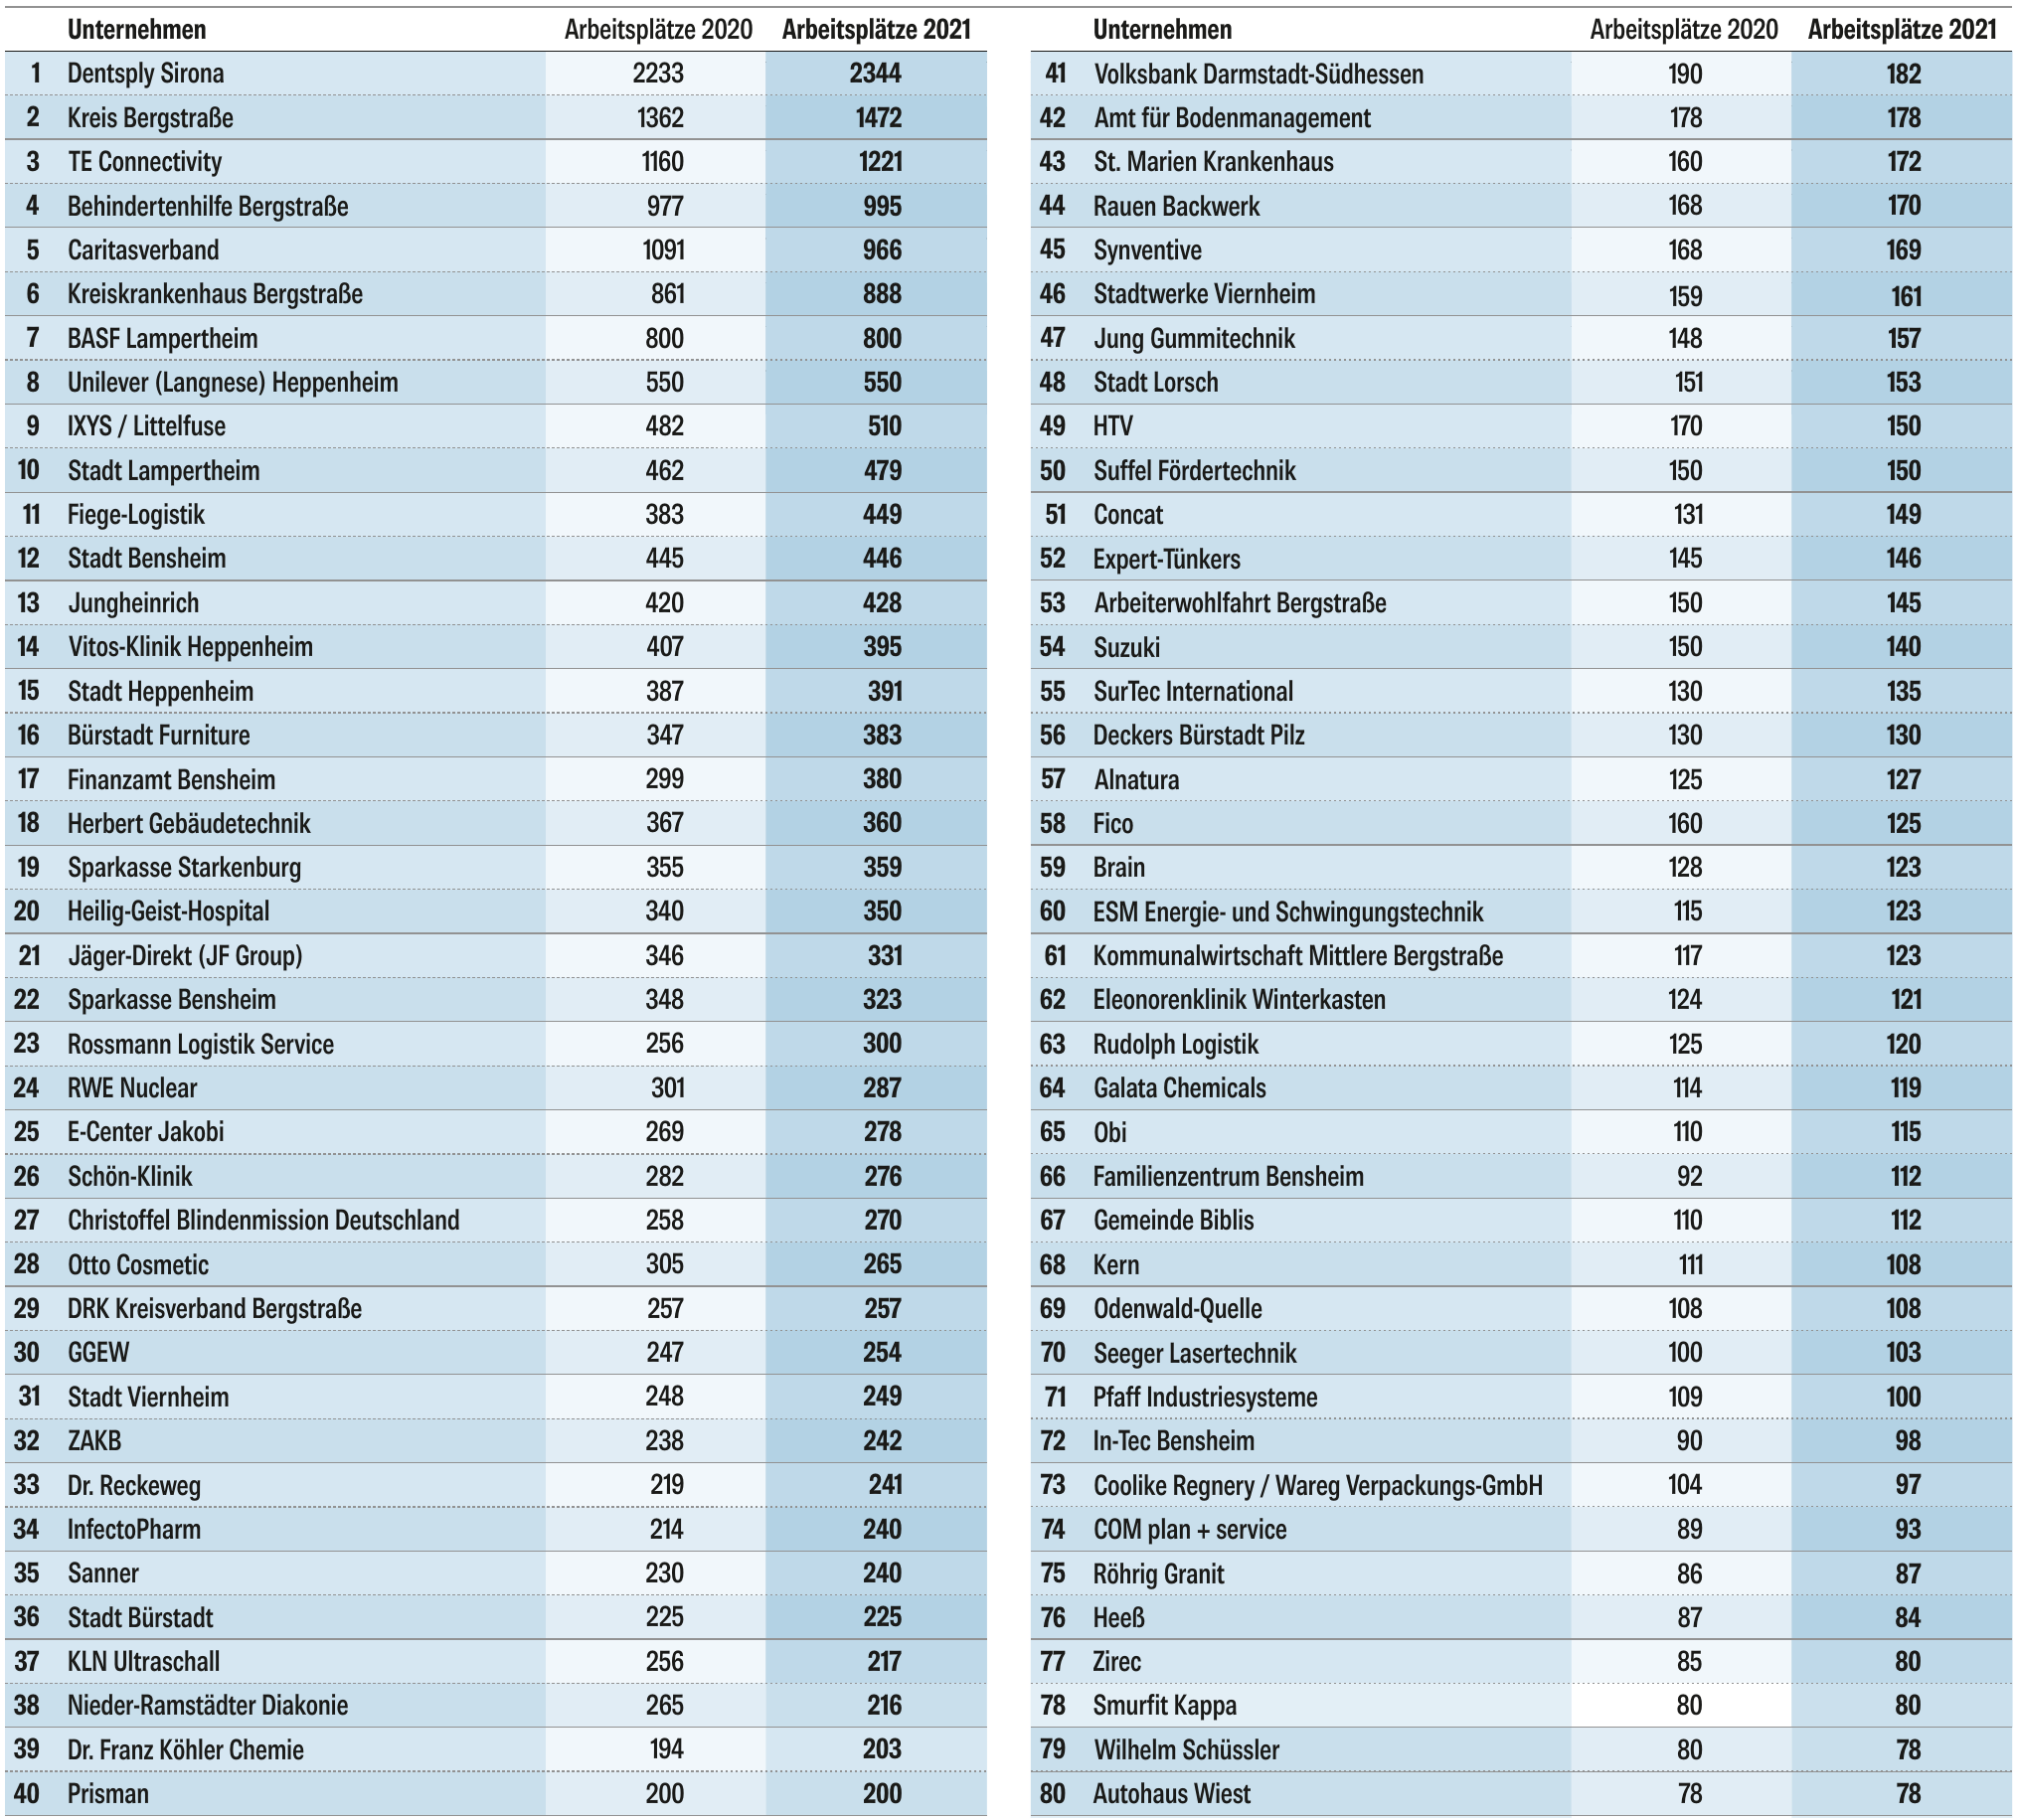 Die 80 größten Arbeitgeber in der Regio-2